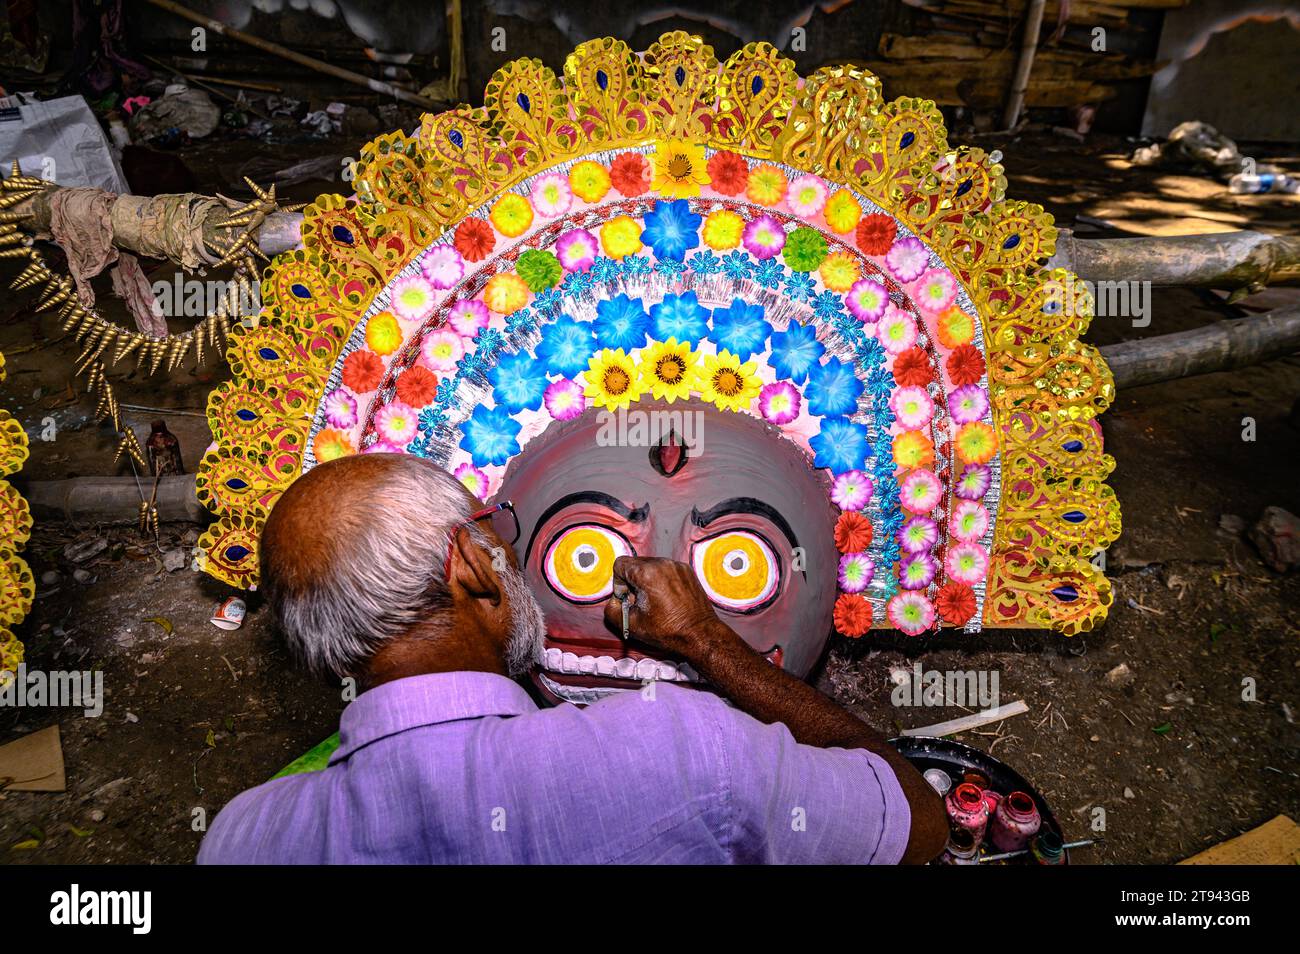 Un artista idolo del villaggio realizza grandi maschere colorate modellate sulle maschere di danza Purulia Chhau (la danza Purulia Chhau è elencata nella lista di danze patrimonio dell'umanità dell'UNESCO) di dee, animali e rakshasa (demoni umanoidi o spiriti ingiusti) come i personaggi della mitologia indù con l'argilla. L'artista poi dipinge gli idoli con il colore, per essere installato in un pandalo Jagaddhatri Puja. Tehatta, Bengala Occidentale, India. Foto Stock